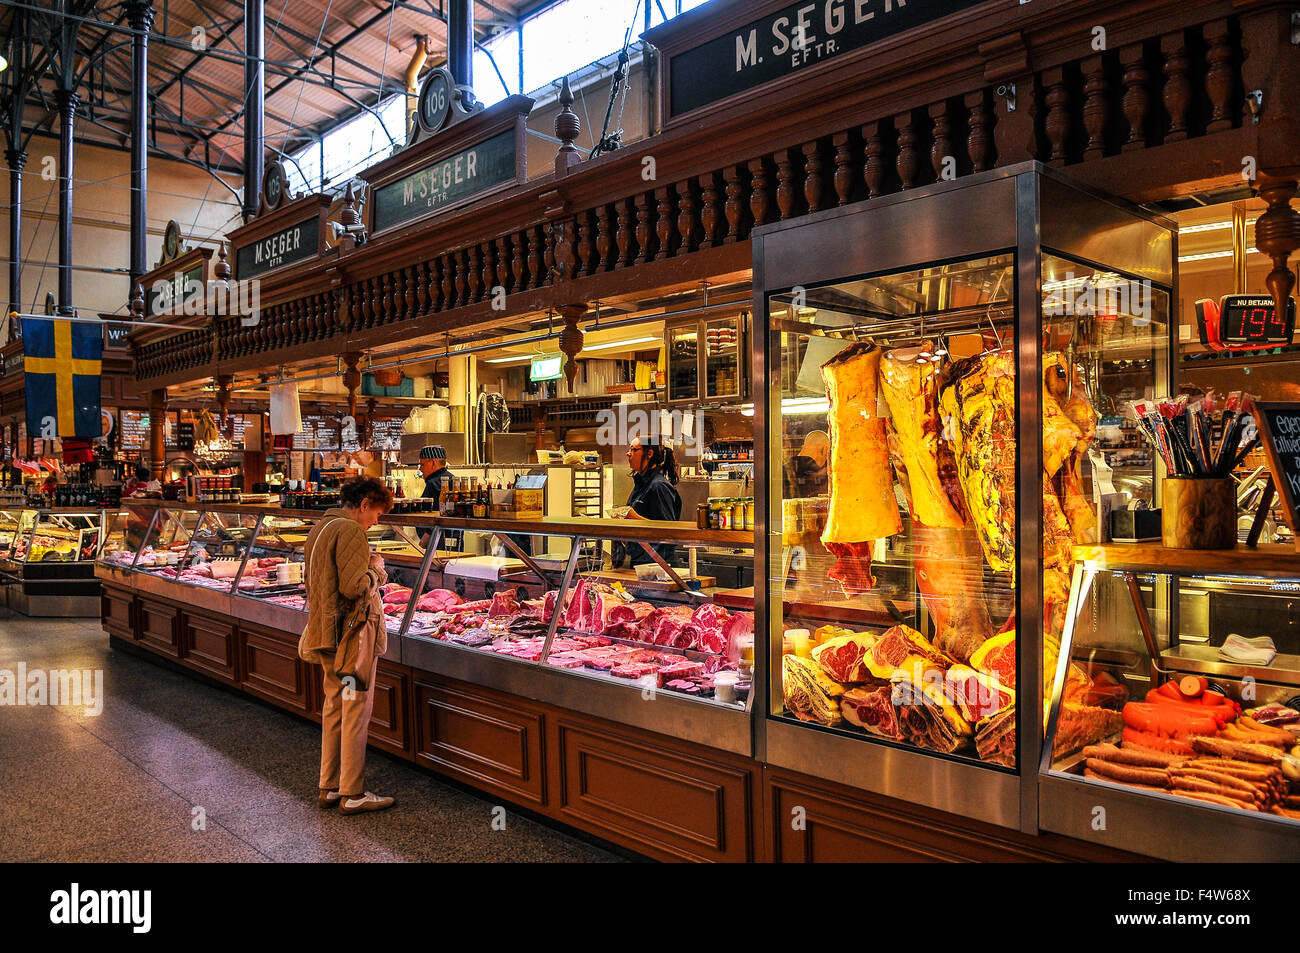 Sweden Stockholm Ostermalmshallen food market built in 1888 Stock ...